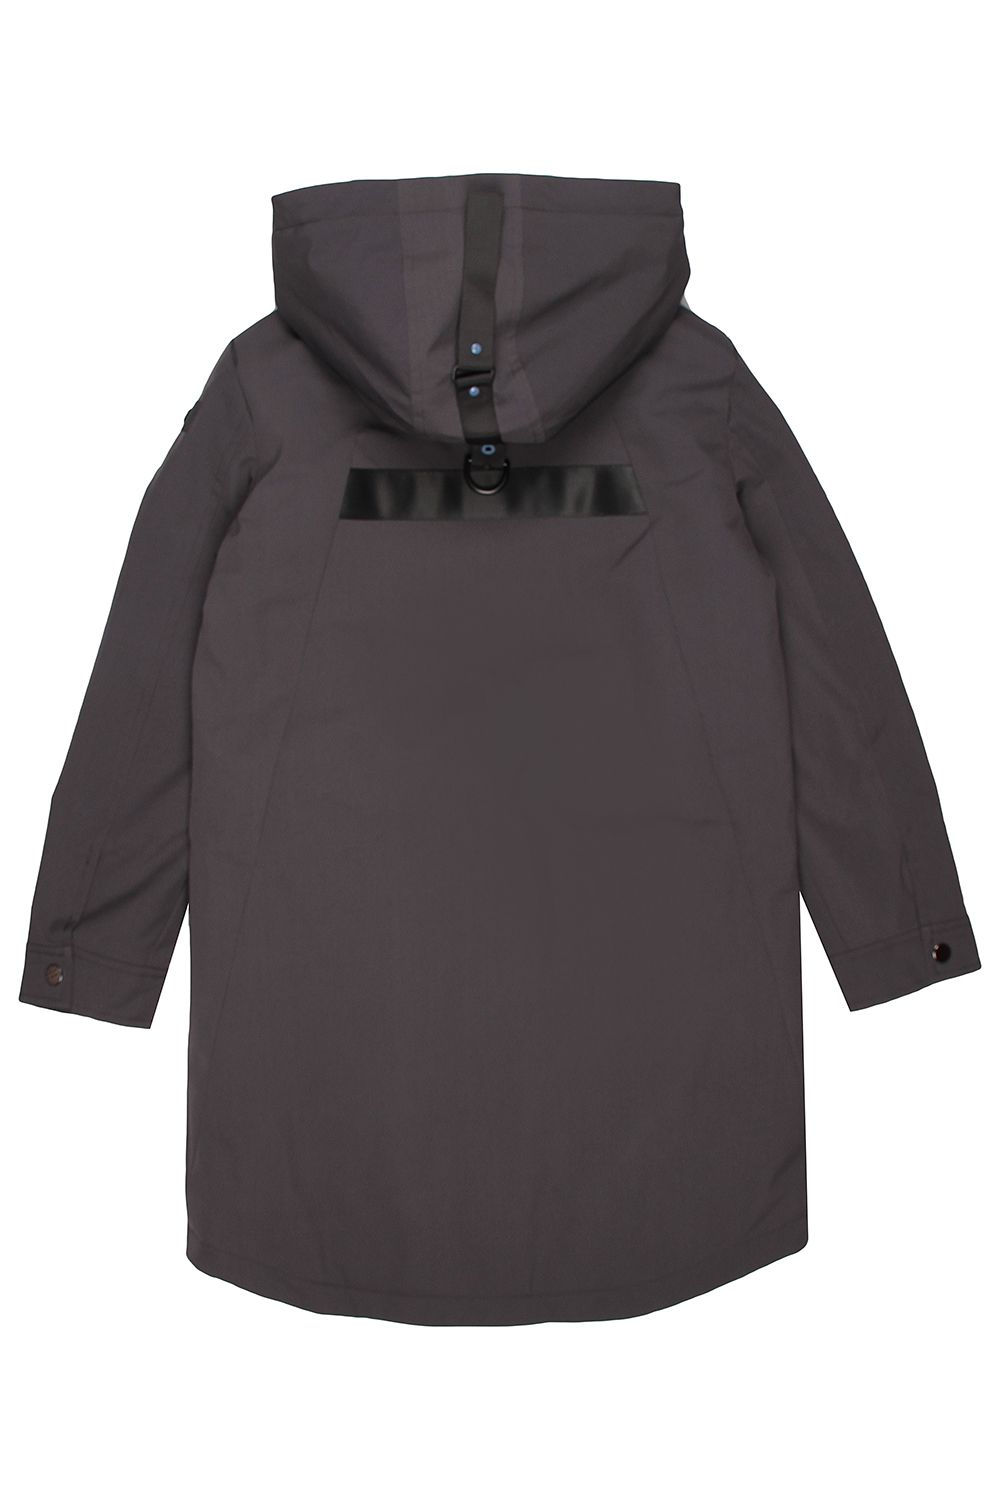 Куртка Noble People, размер 122, цвет серый 18607-519 - фото 3